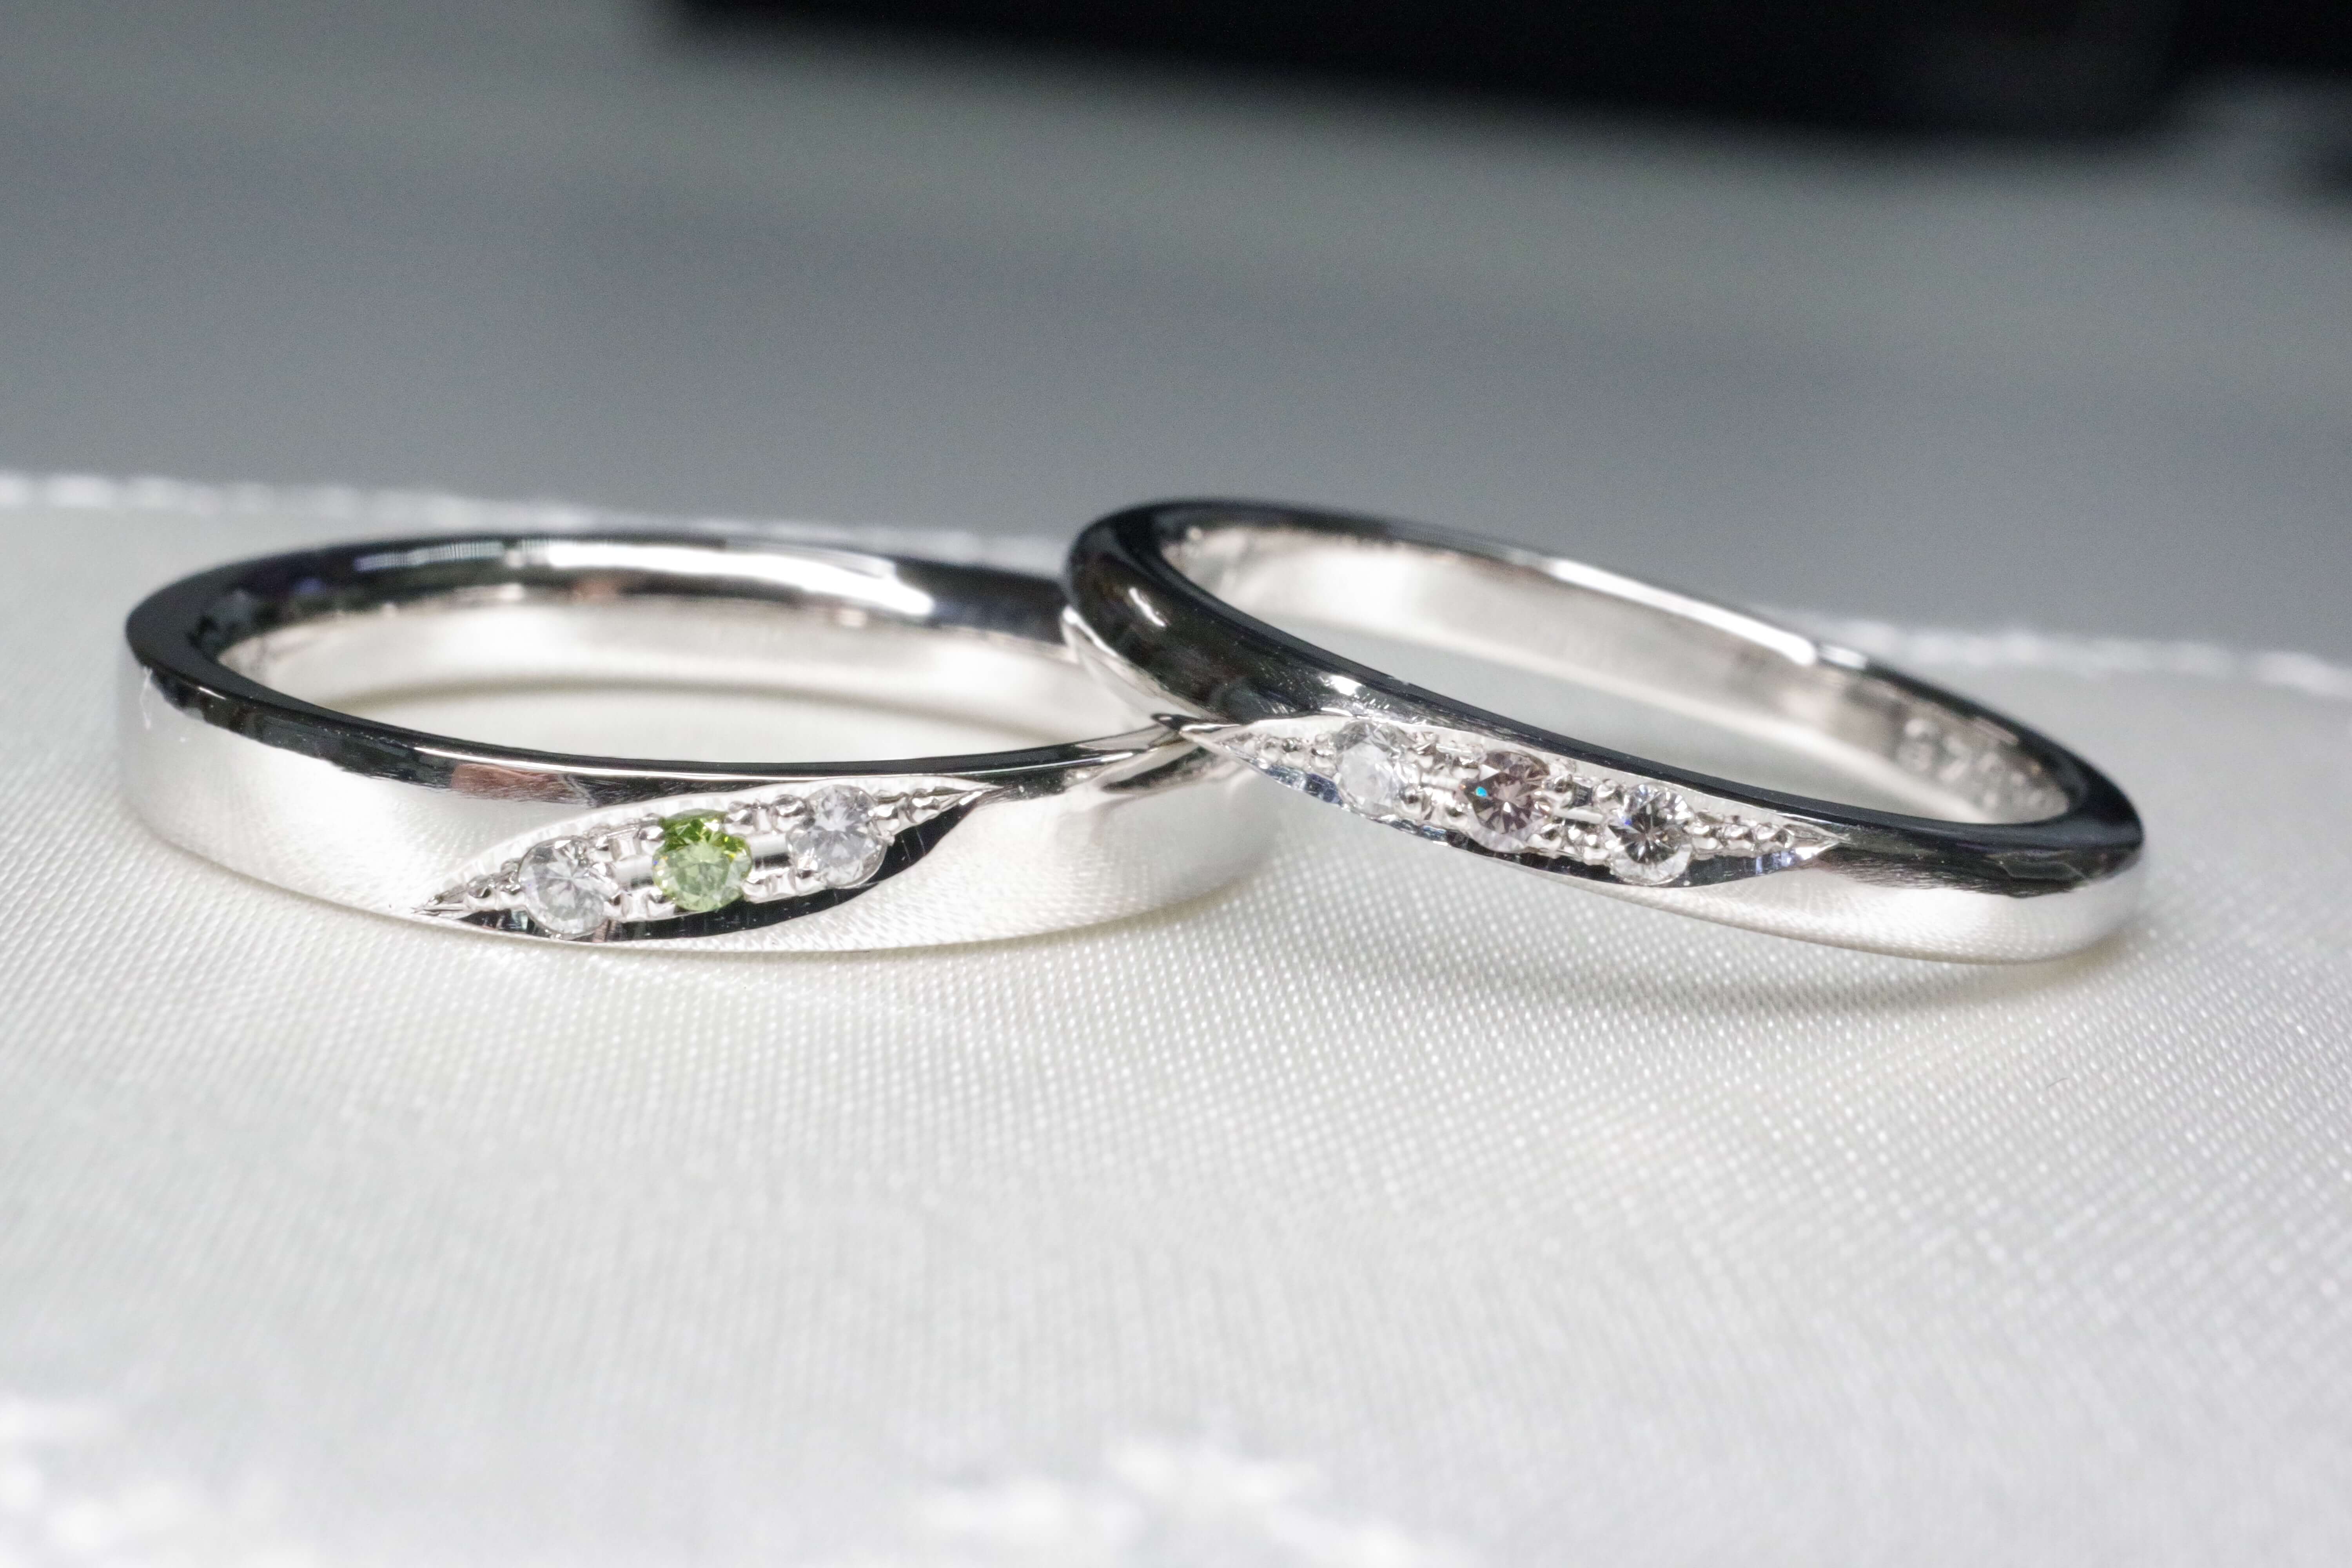 石をより美しく魅せる留め方@手作り結婚指輪 工房スミス札幌店